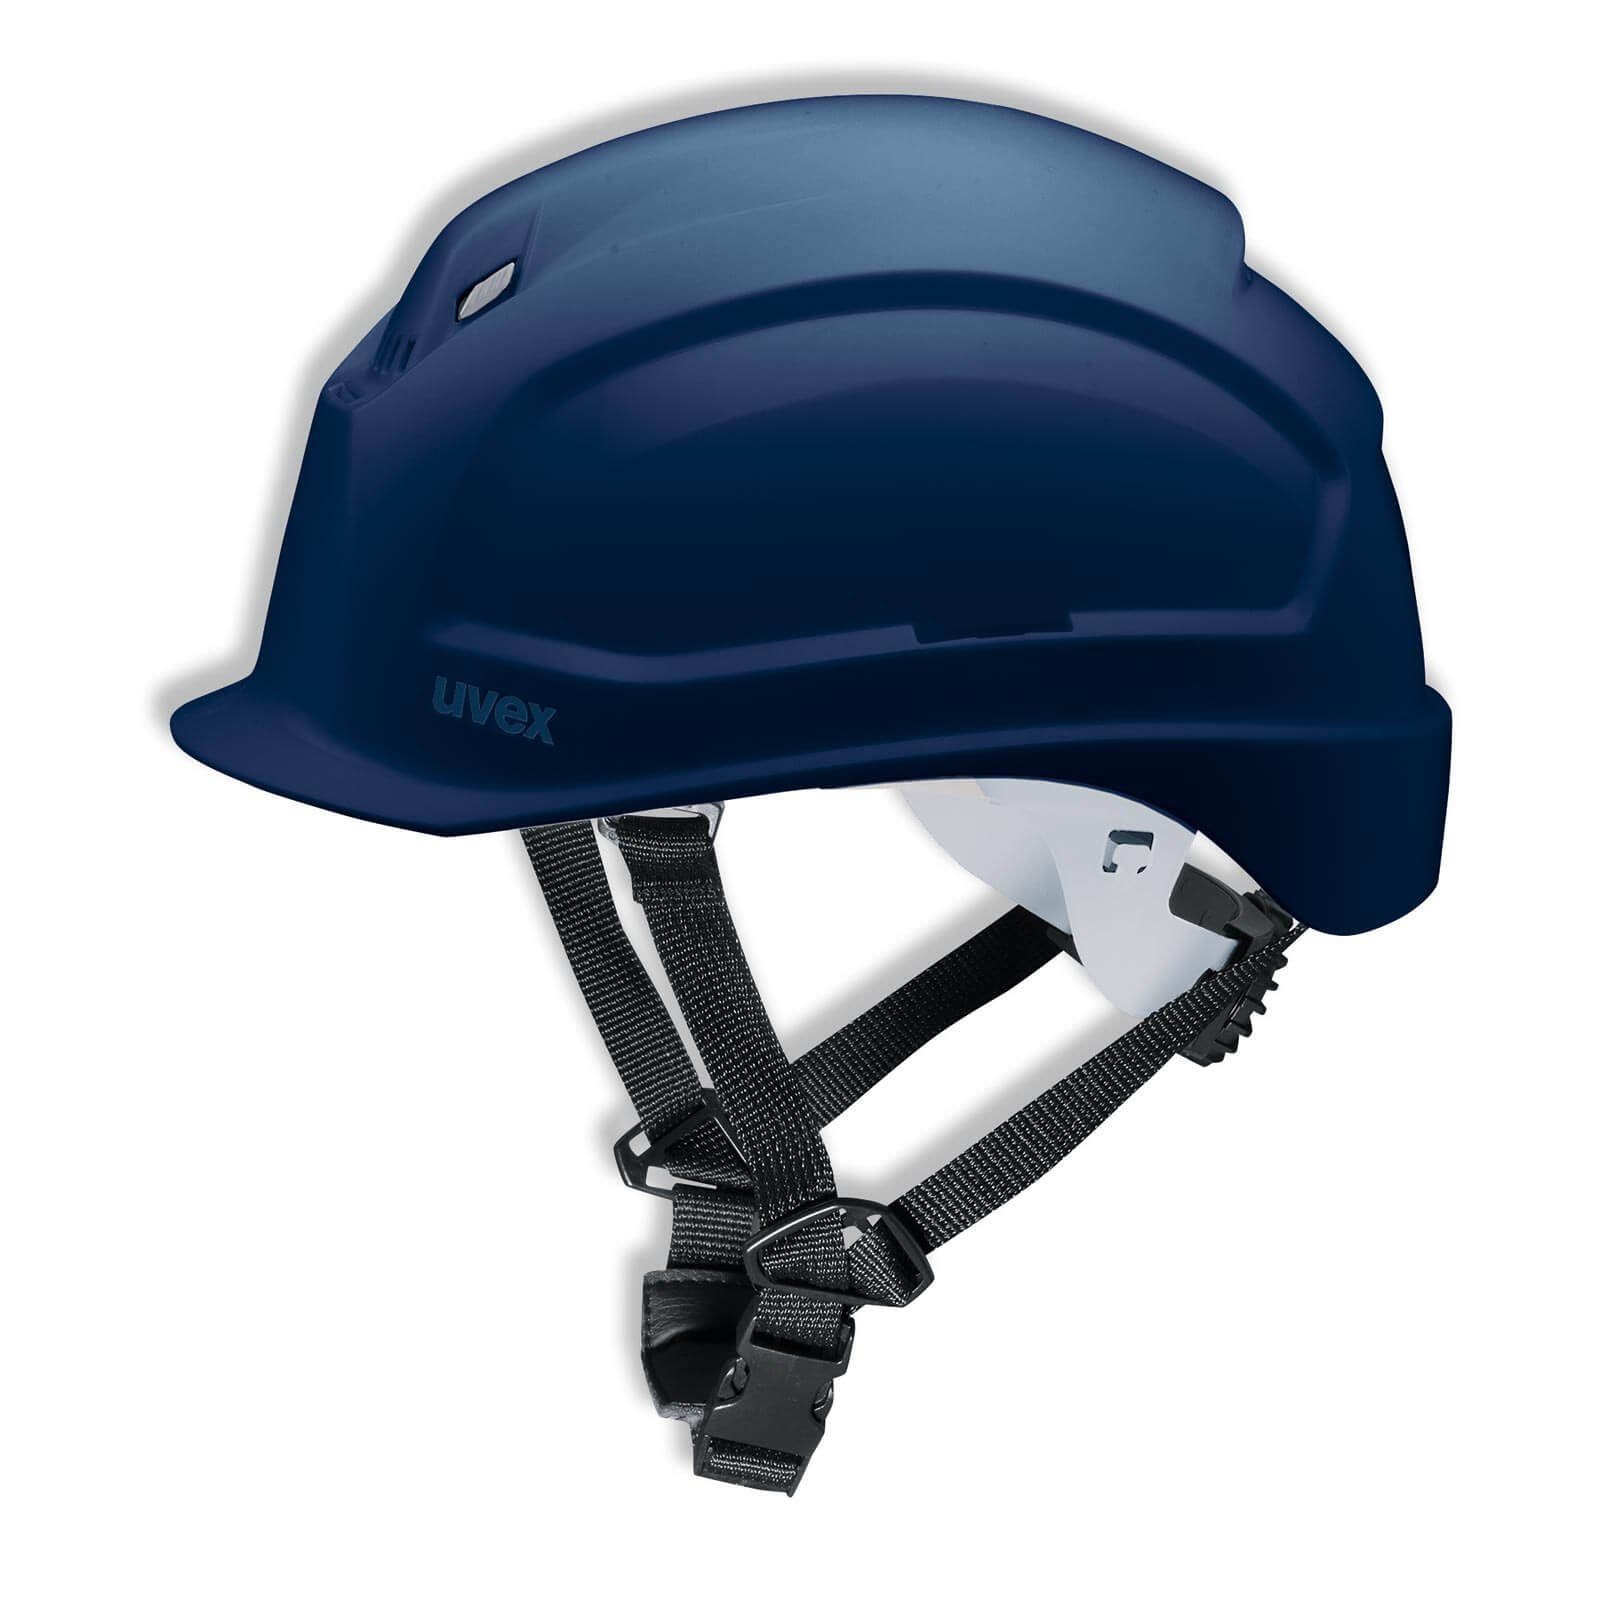 Uvex Schutzhelm pheos S-KR - Arbeitsschutz-Helm - Vormontierter 4-Punkt Kinnriemen blau